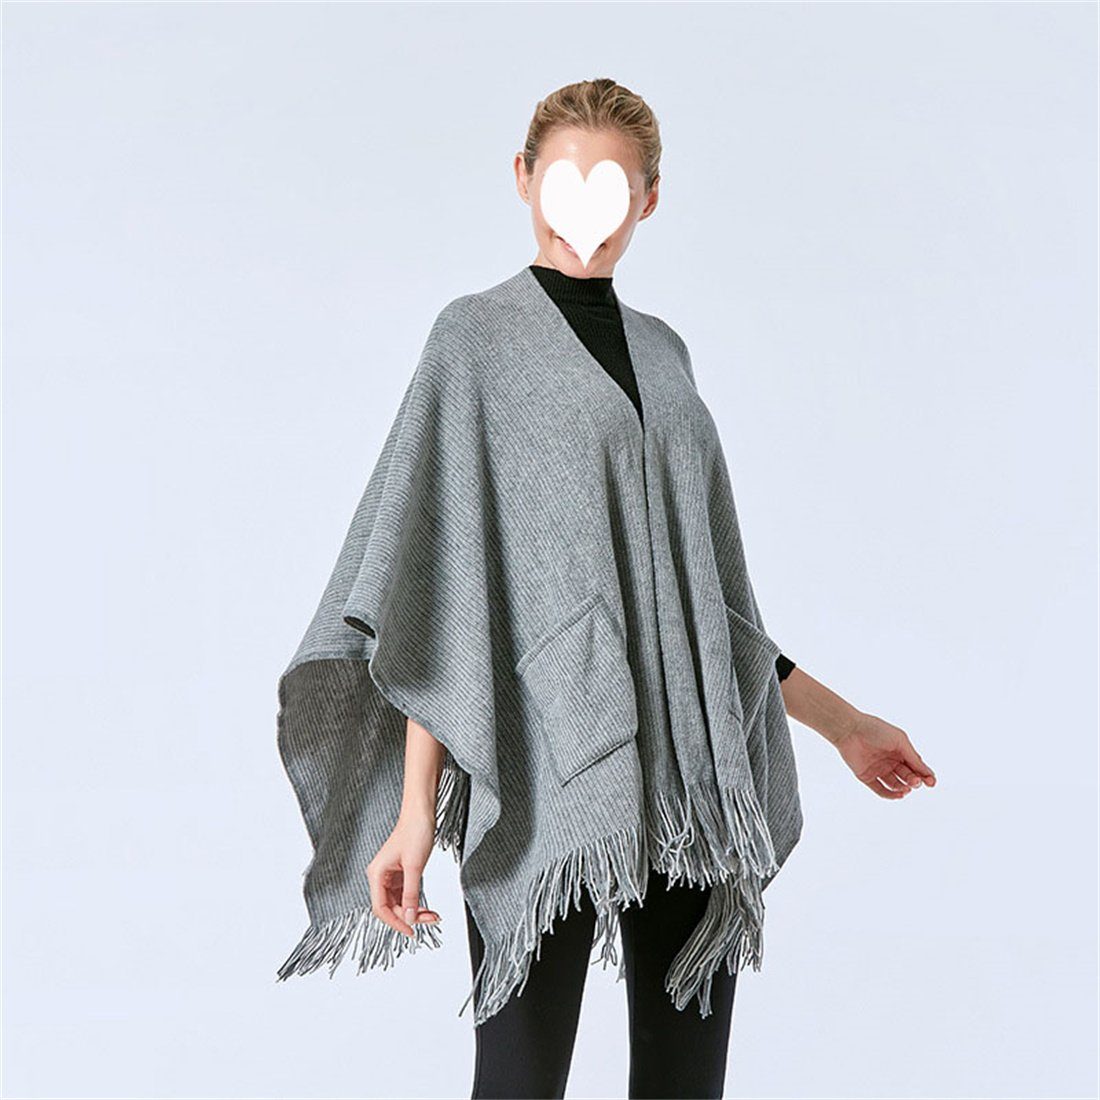 Tasche warme Retro Mode DÖRÖY Schal, Damen Grau einfarbig Schal Modeschal Winter Umhang